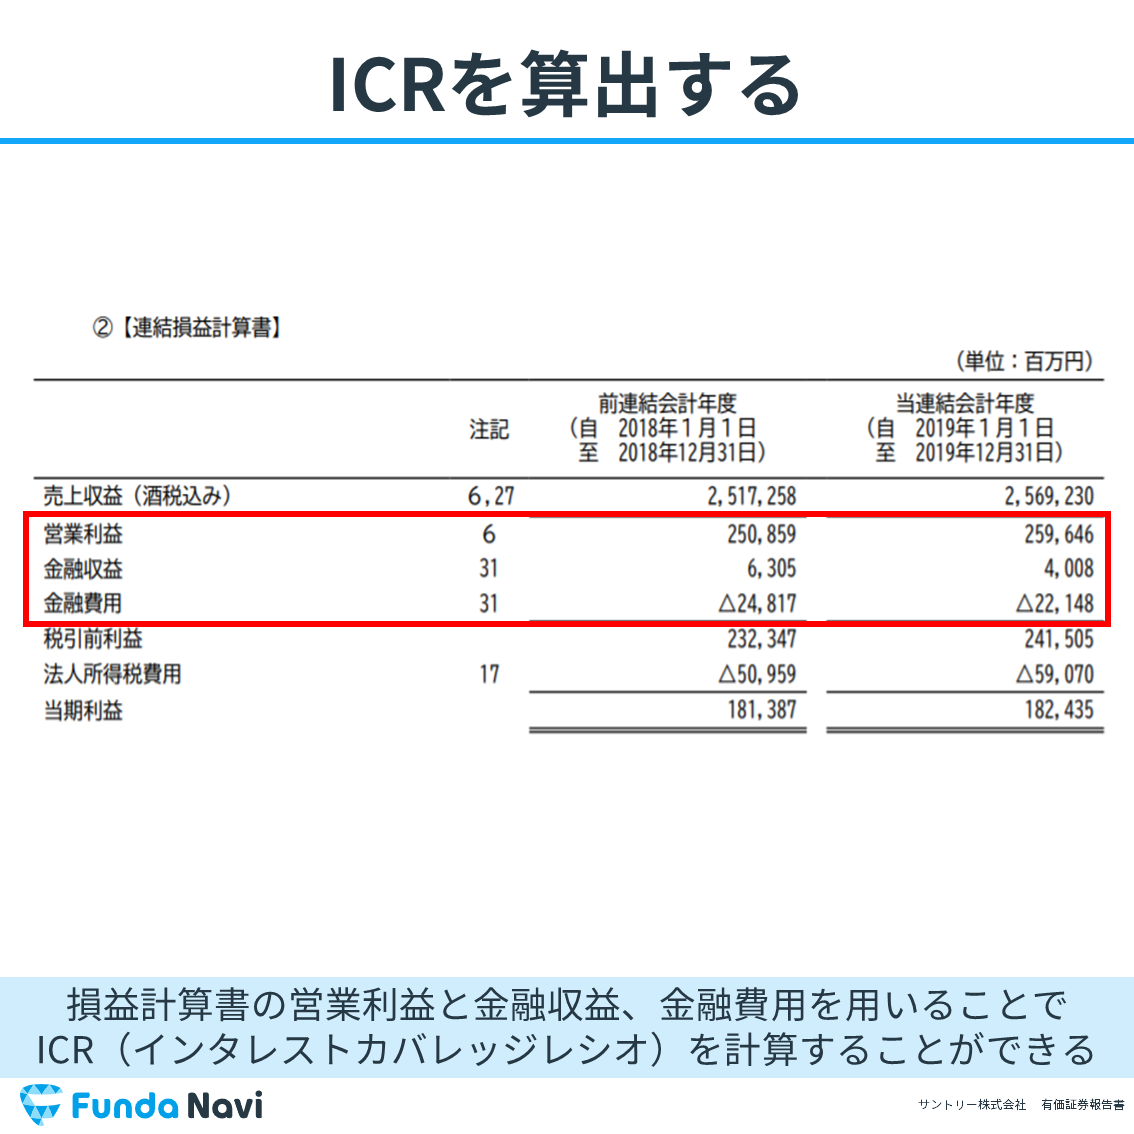 インタレストカバレッジレシオ（ICR）と有価証券報告書